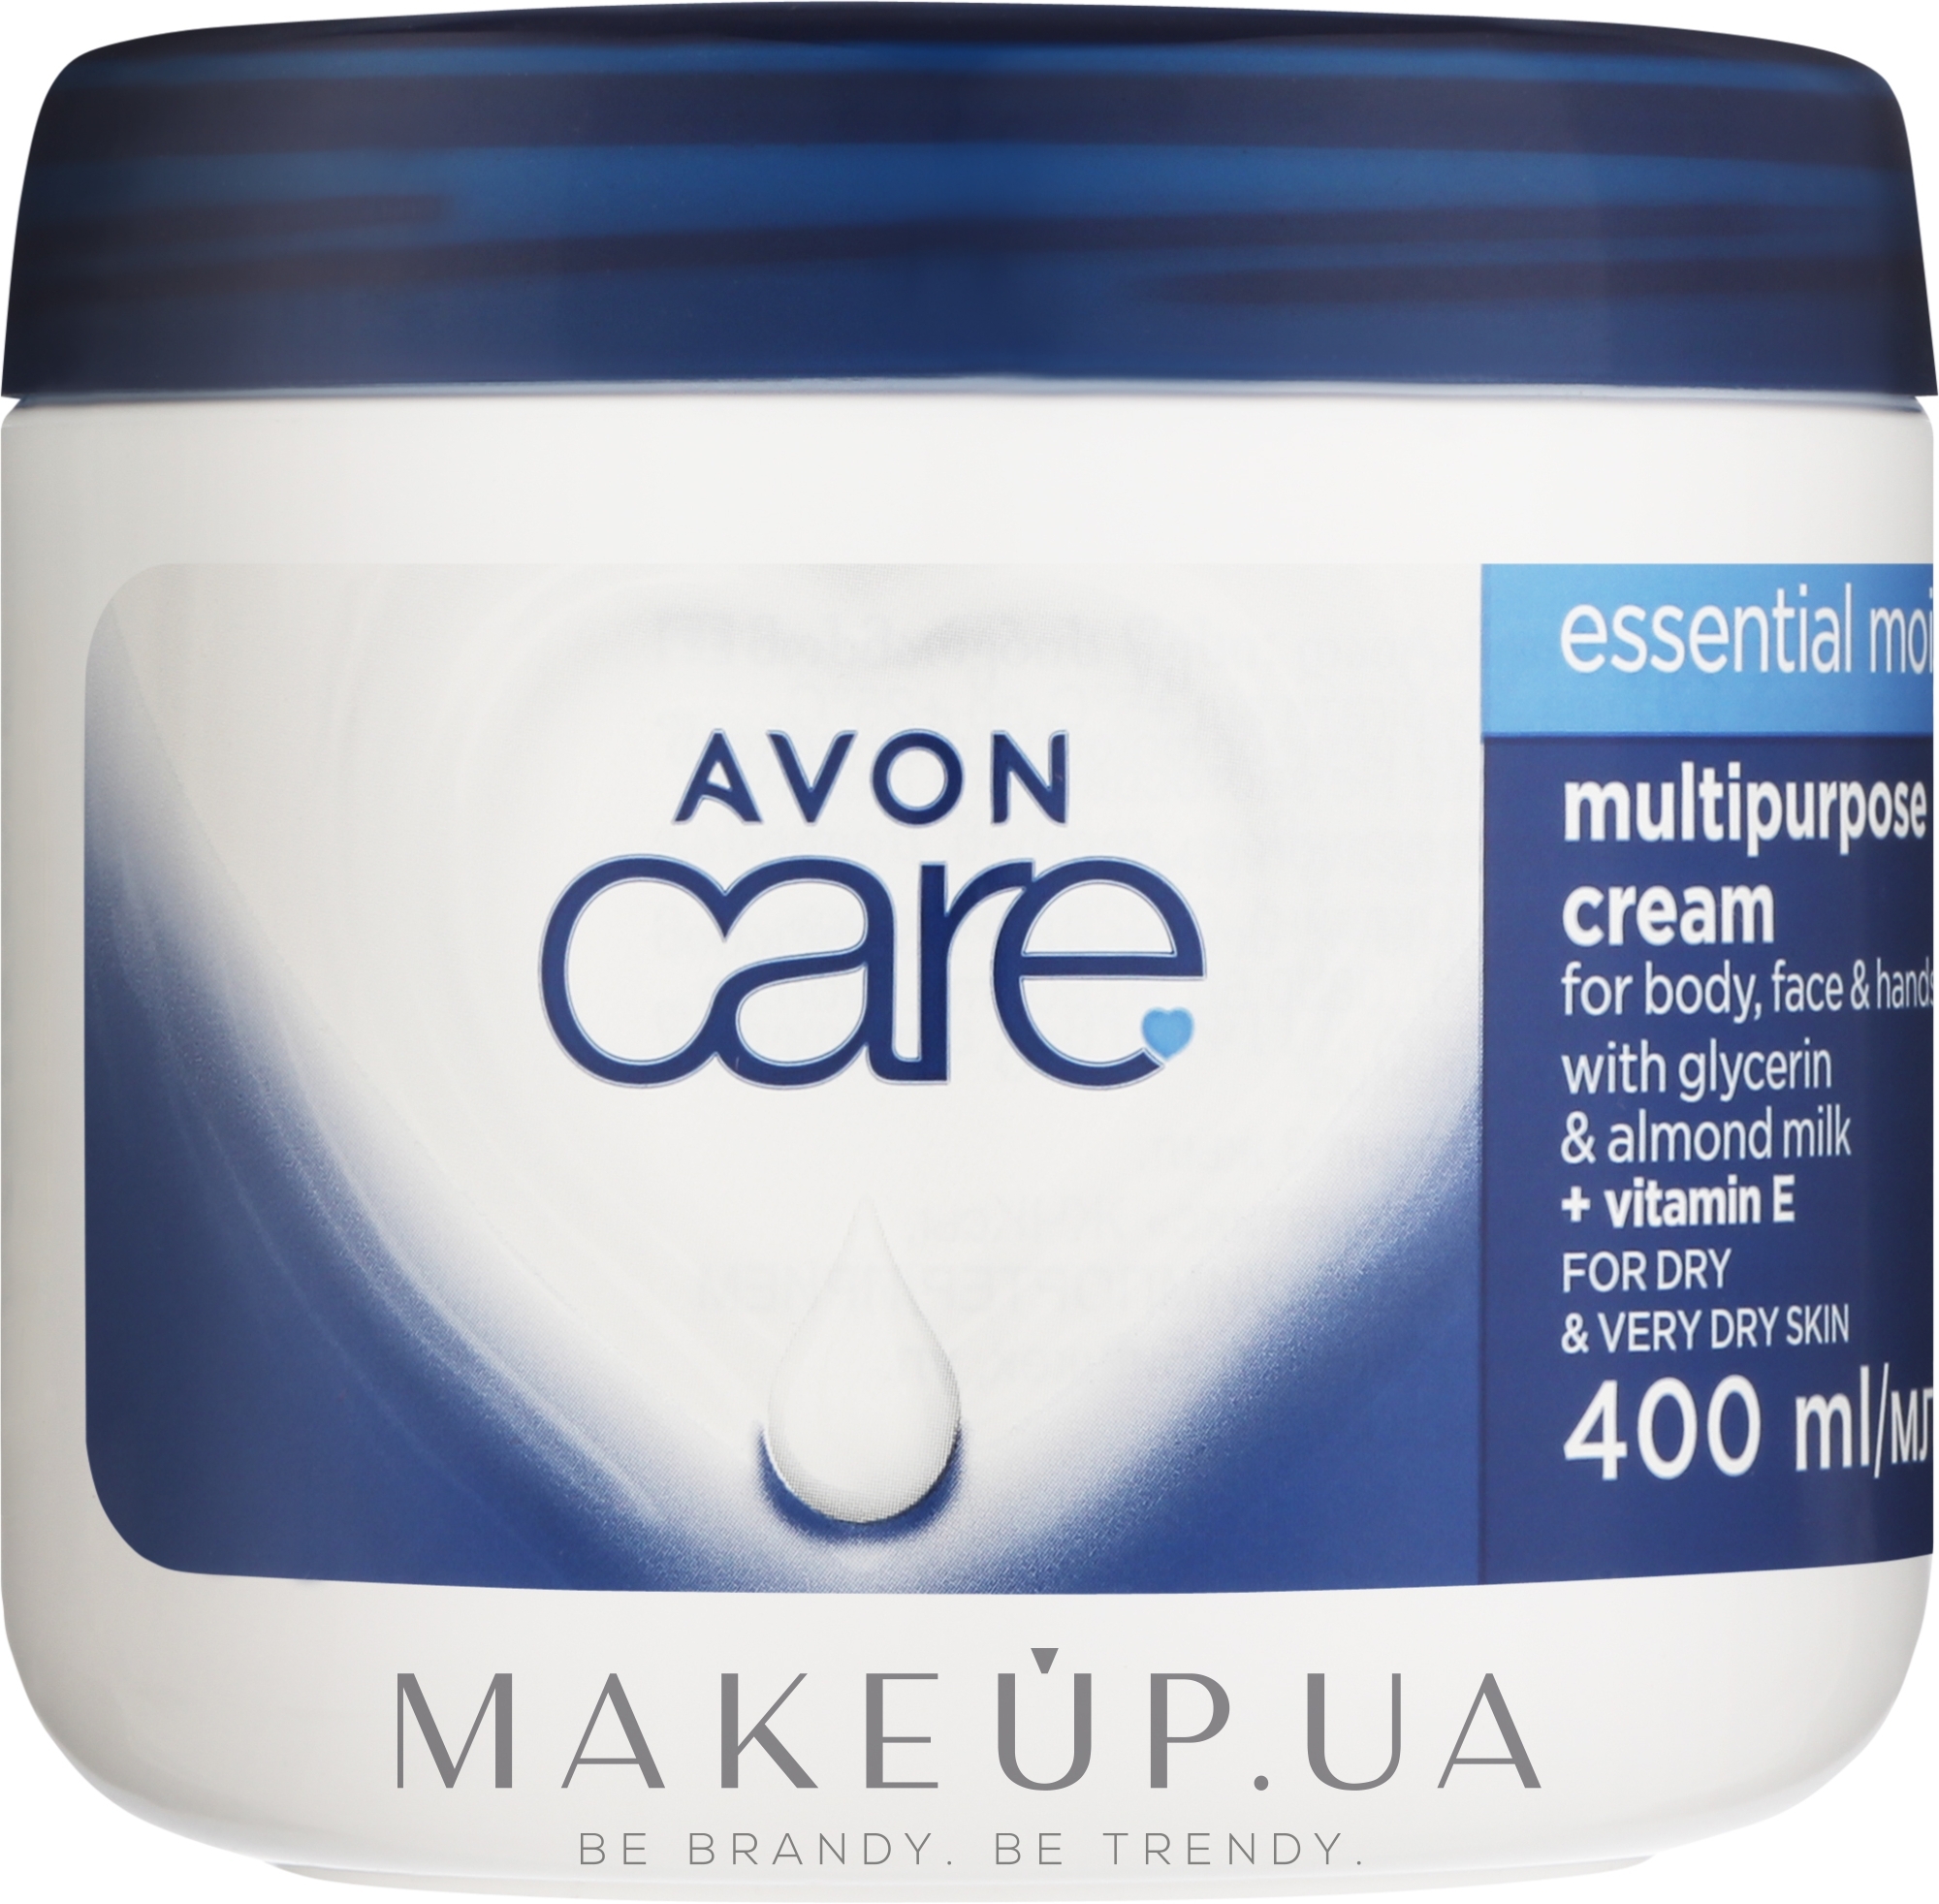 Увлажняющий мультифункциональный крем для лица, рук и тела - Avon Care Essential Moisture Multipurpose Cream — фото 400ml